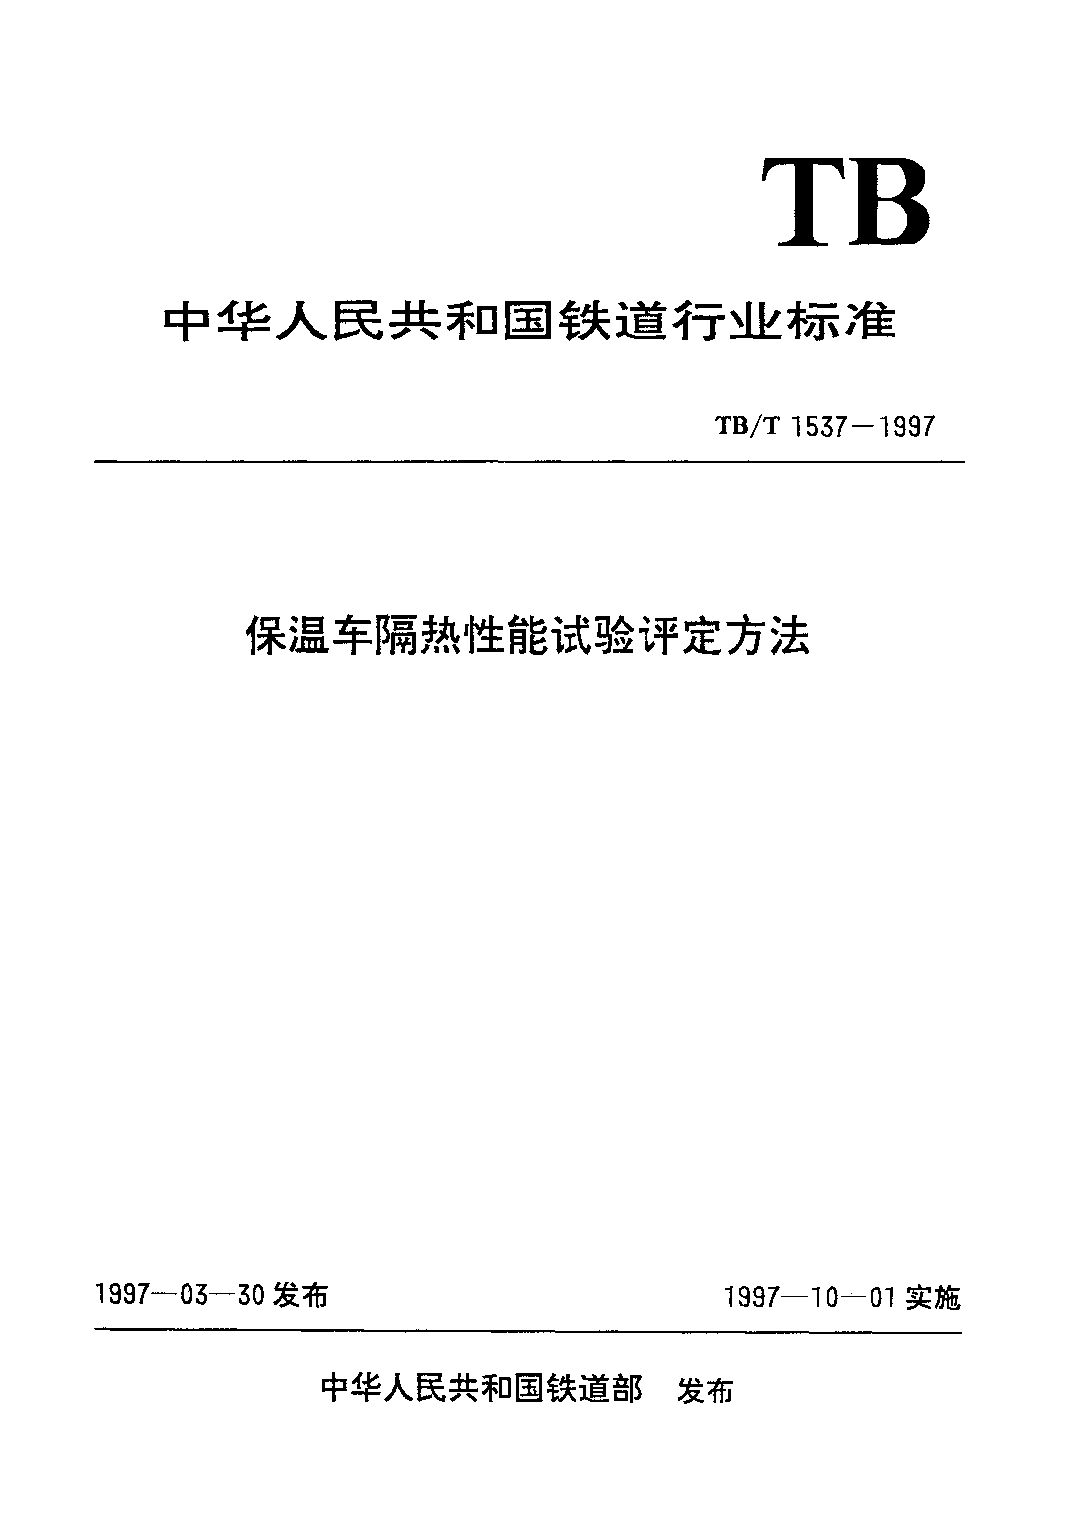 TB/T 1537-1997封面图